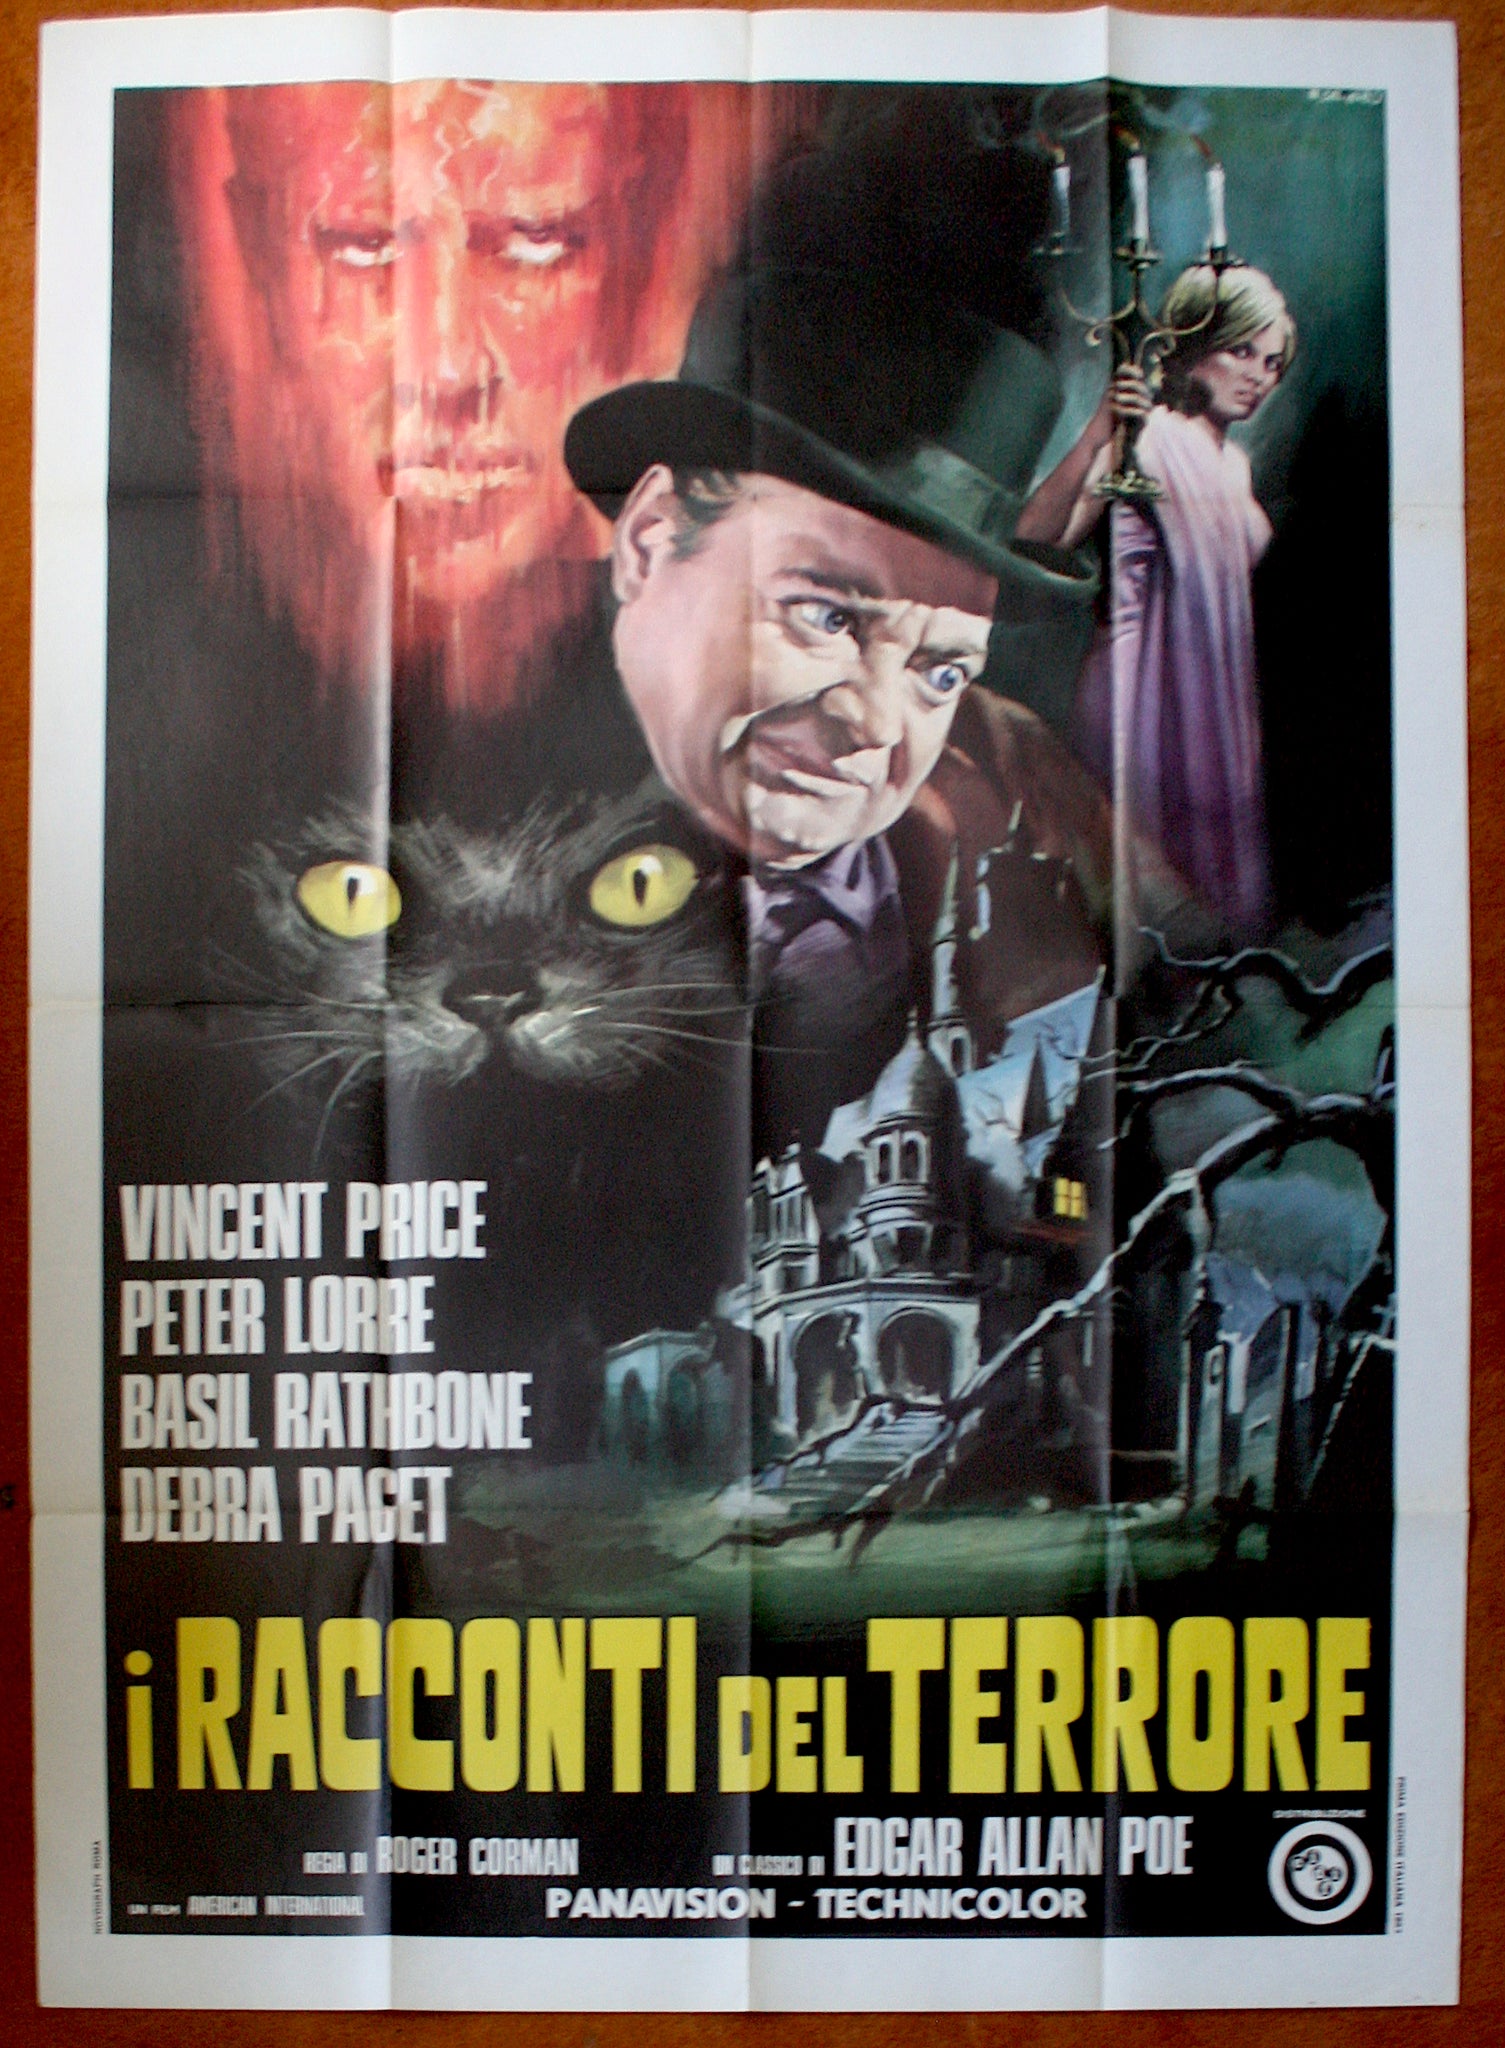 Tales of Terror (1962) Italian 2 Fogli Poster